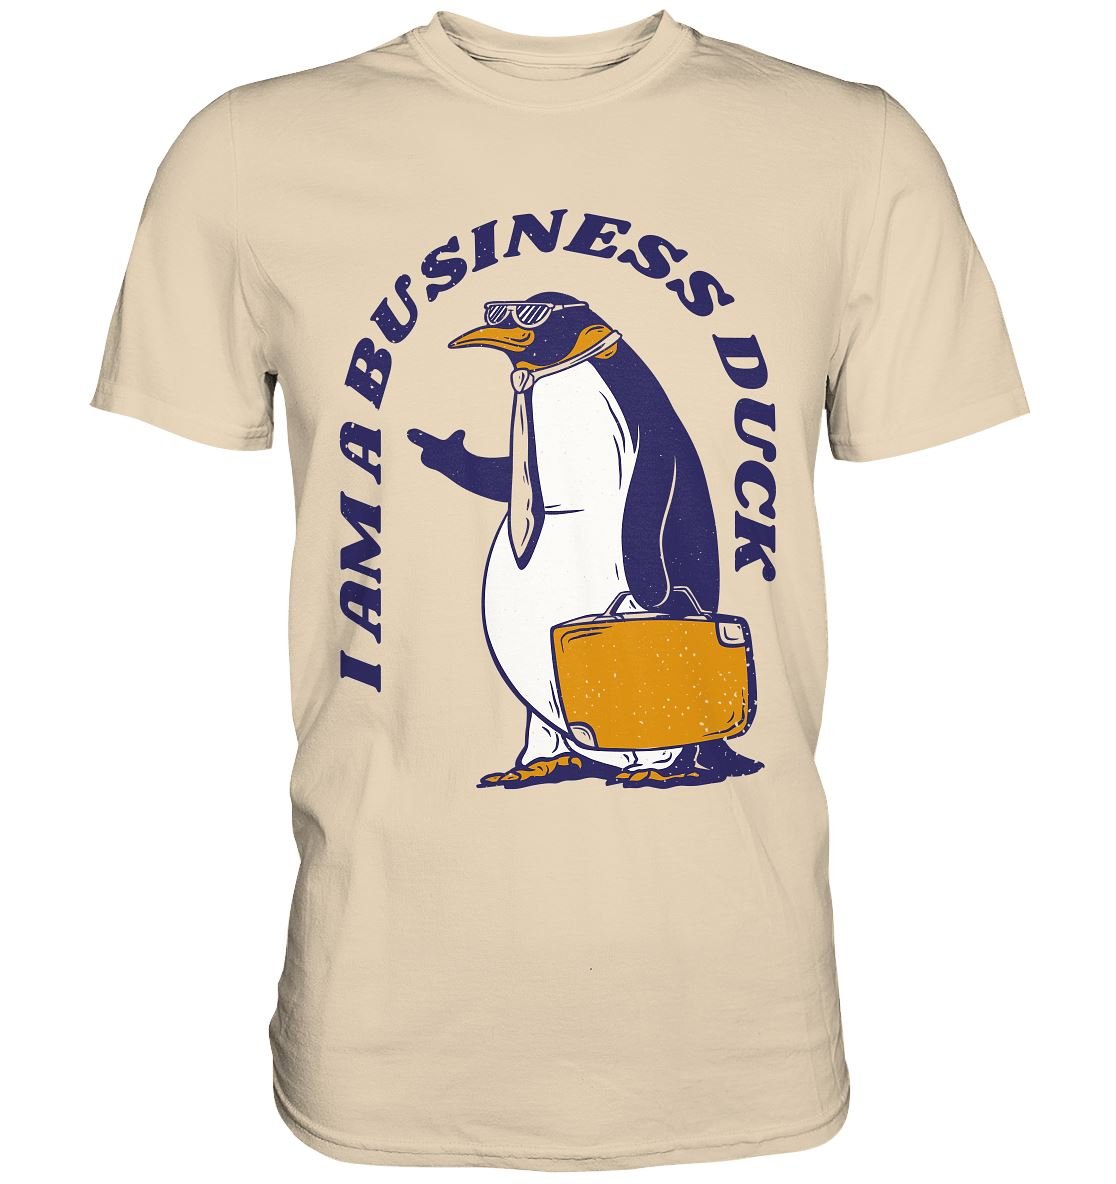 I AM A BUSINESS DUCK - Premium Shirt - BINYA